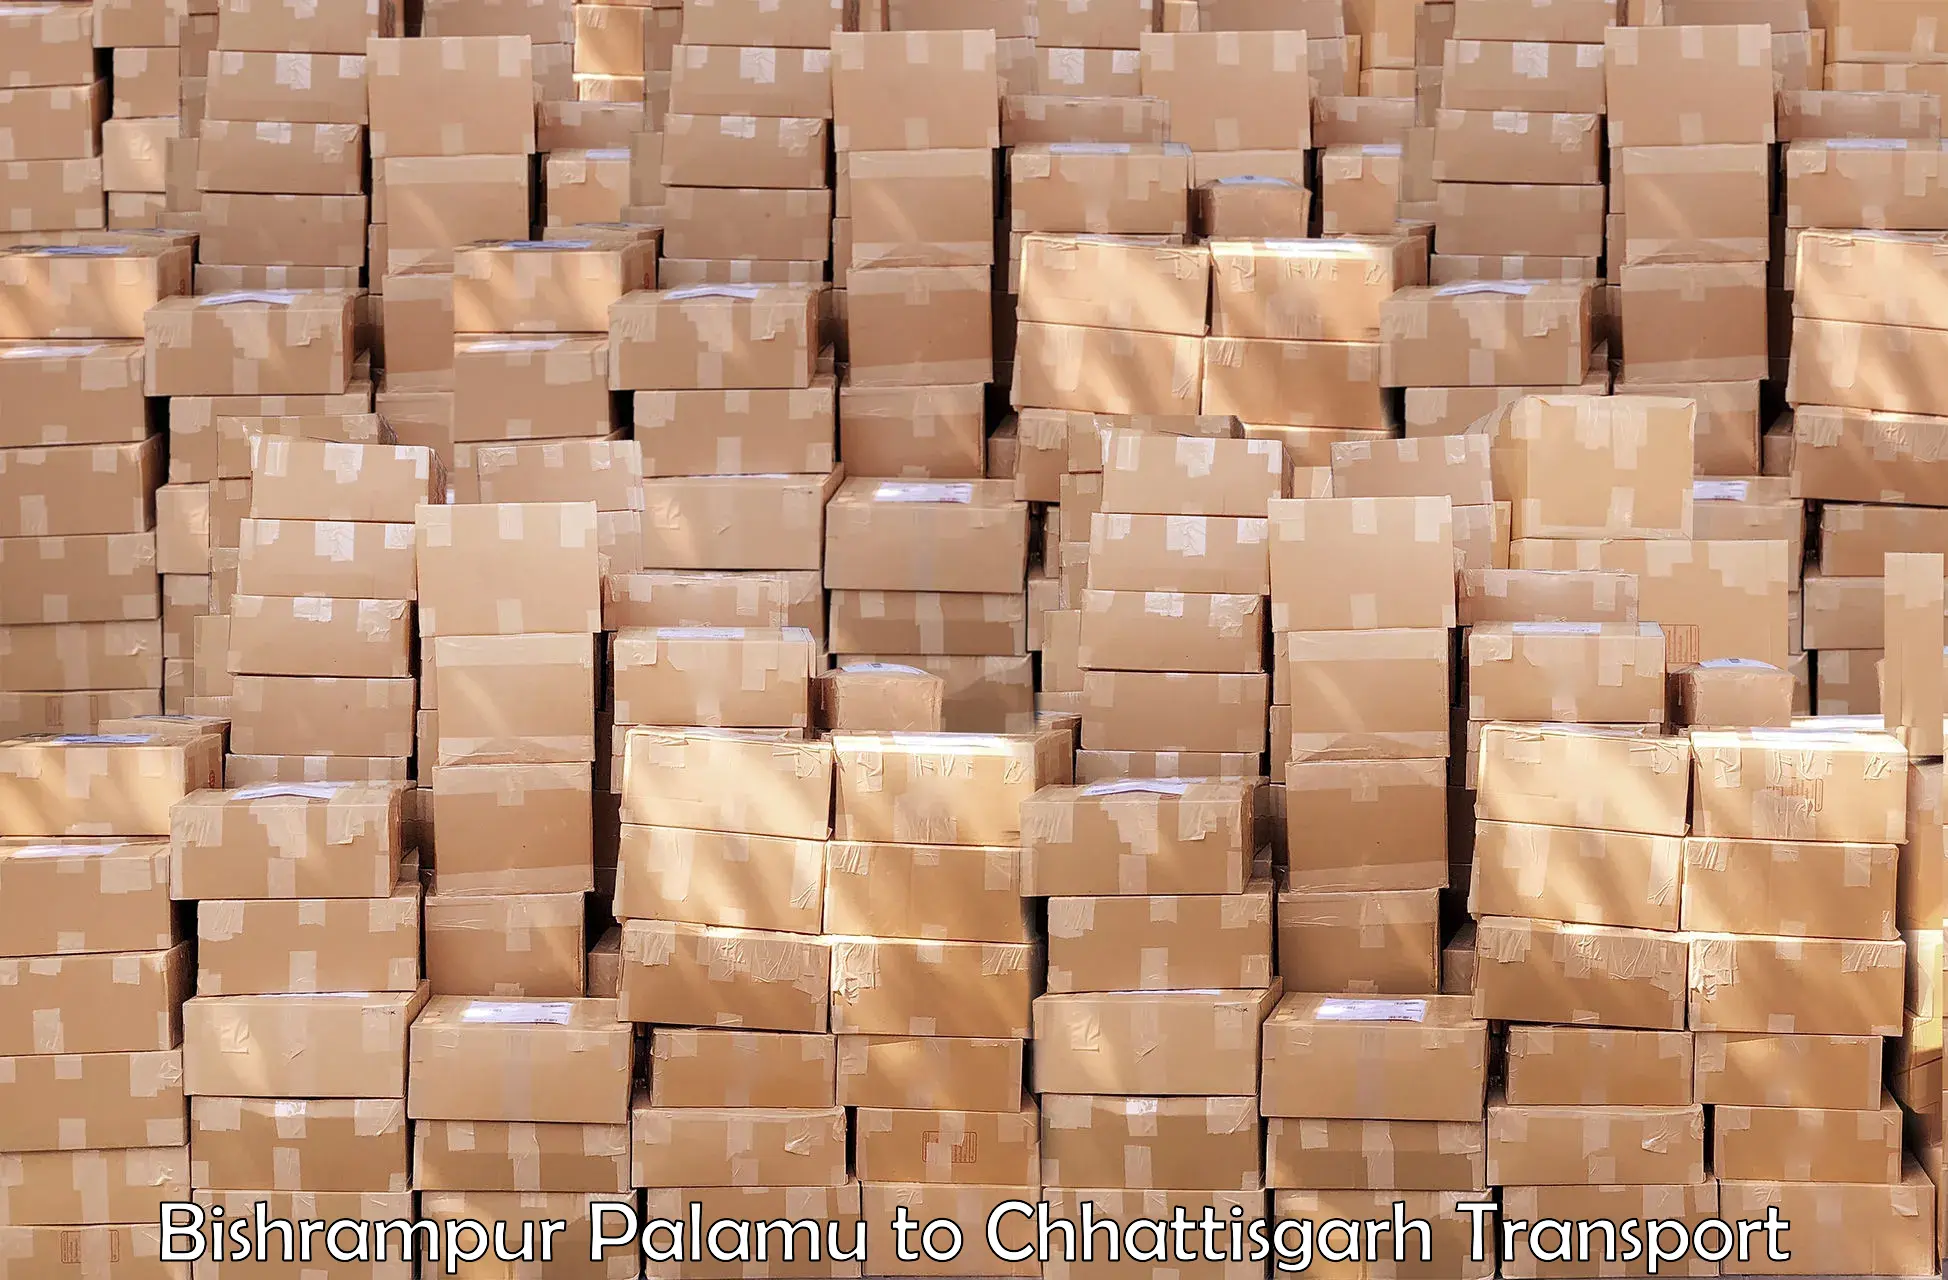 Daily parcel service transport Bishrampur Palamu to bagbahra